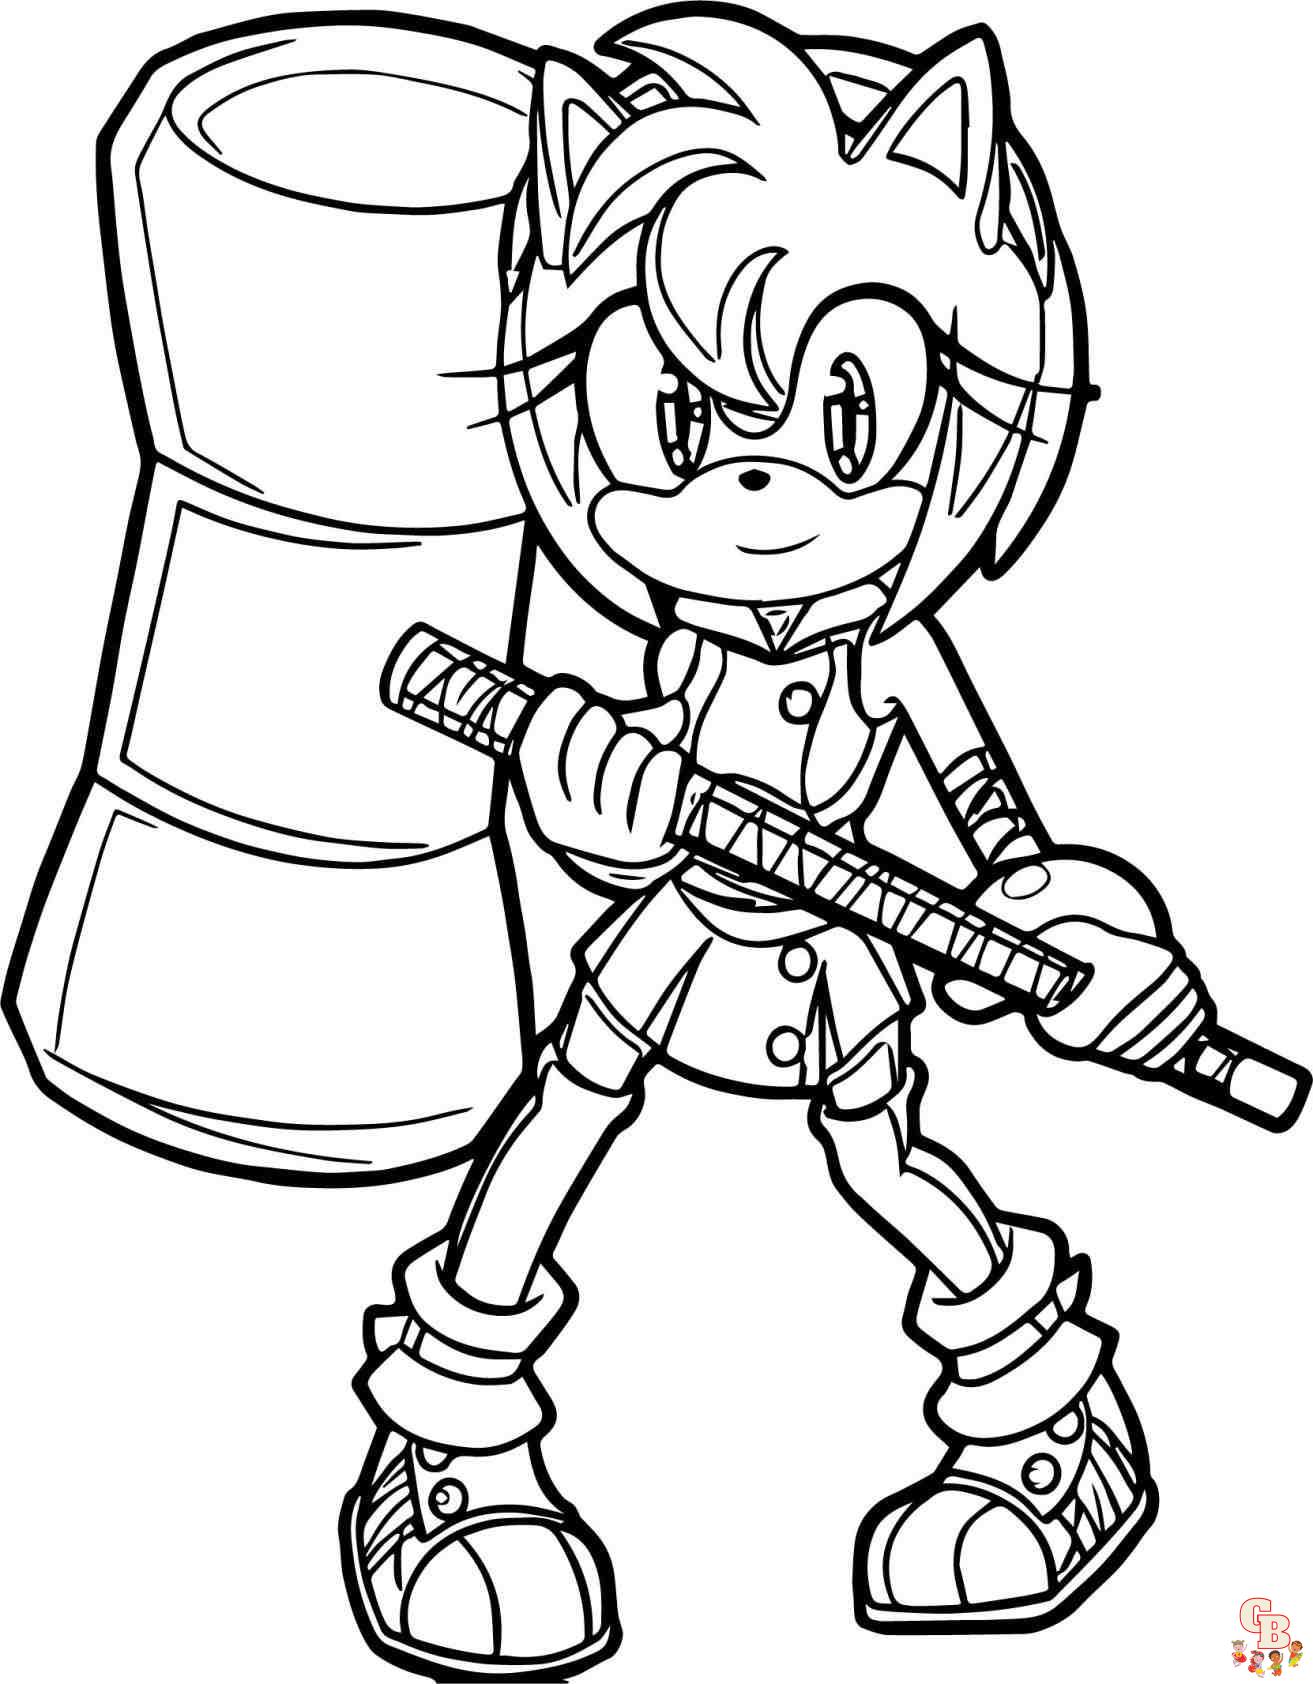 Desenho para colorir do Sonic Boom